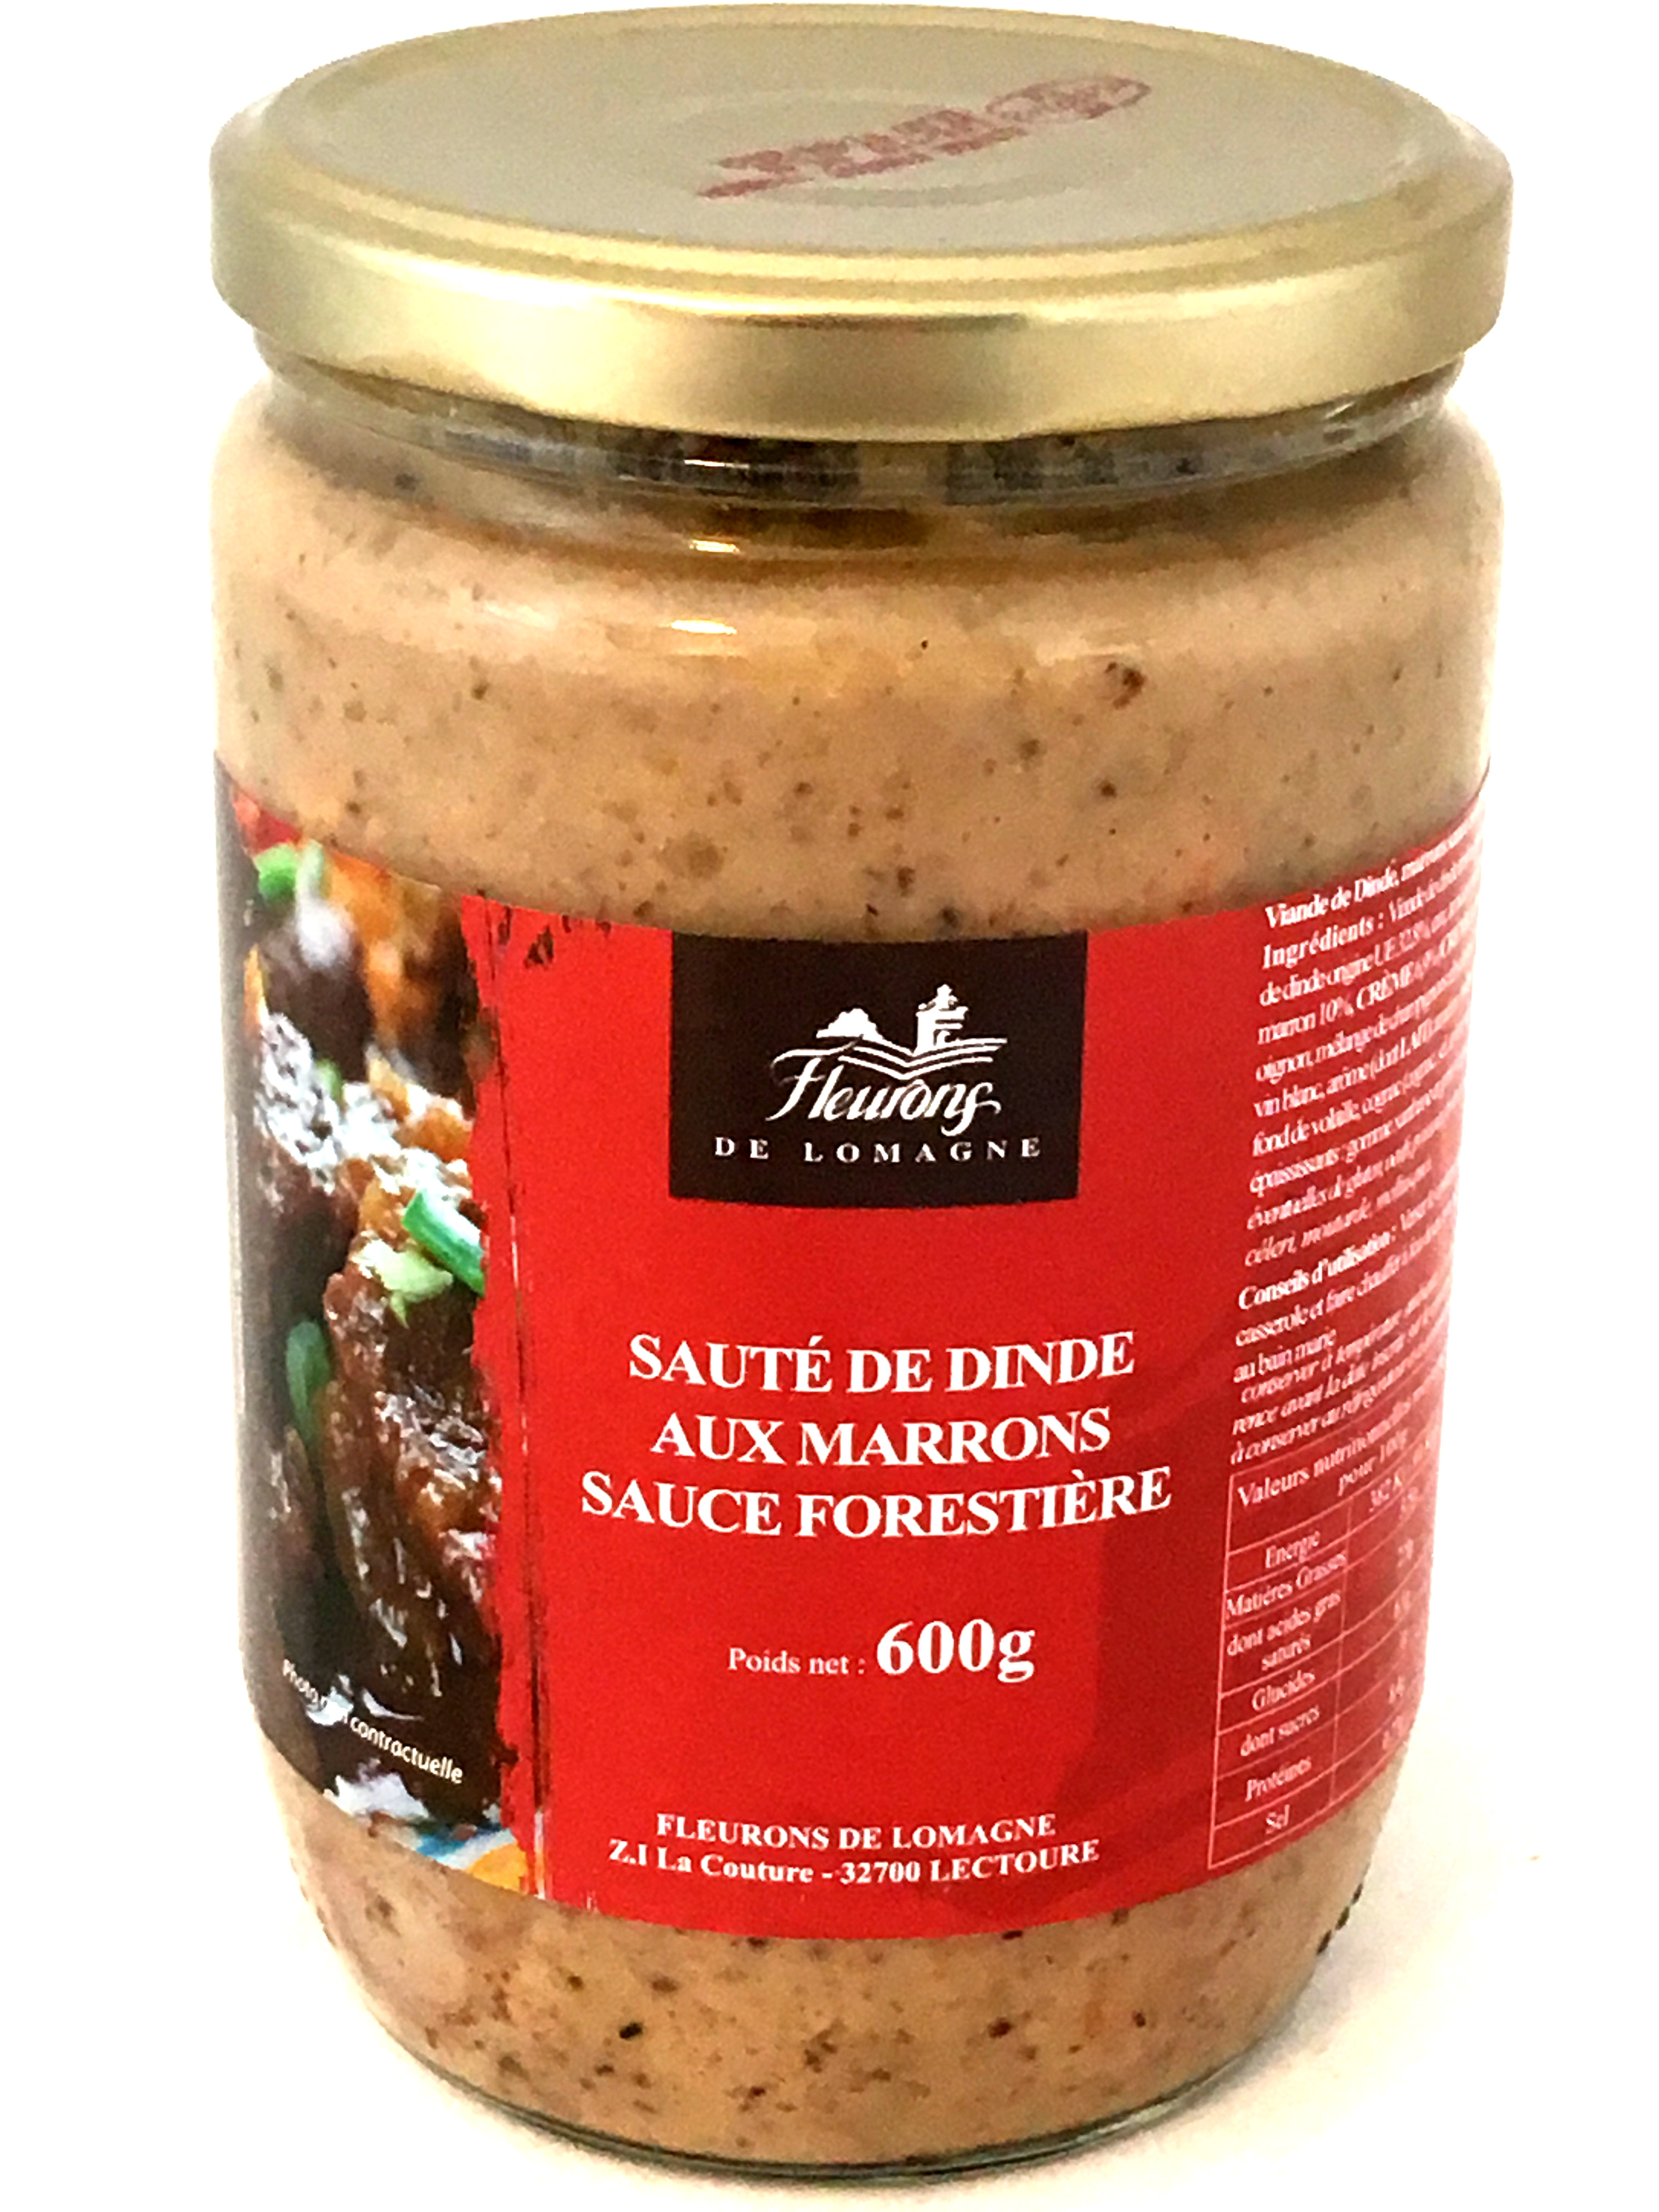 Sauté de dinde aux marrons sauce forestière 600g (bocal)